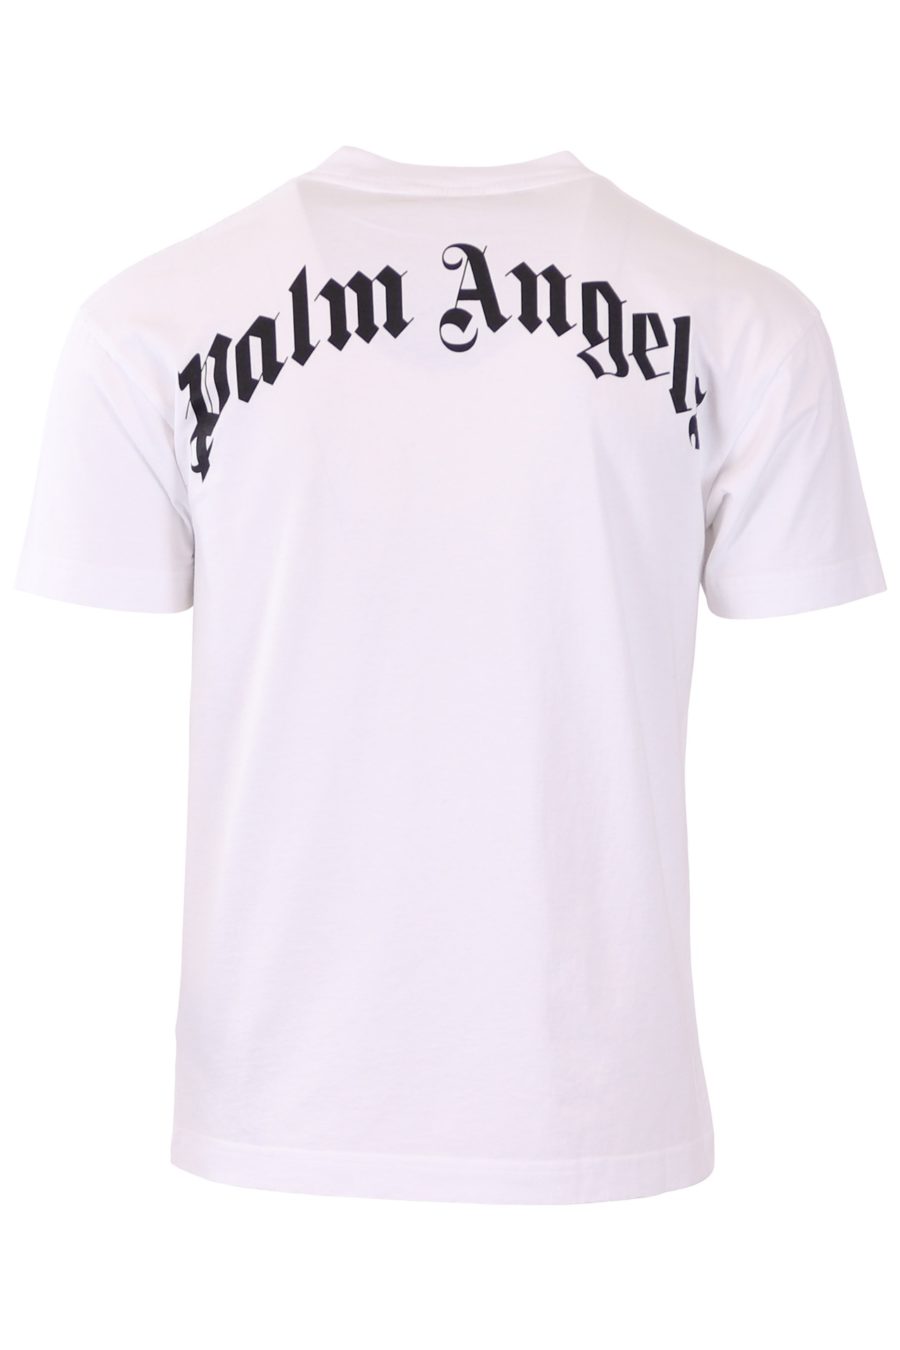 Palm Angels - Camiseta Palm Angels branca com urso - Moda BLS